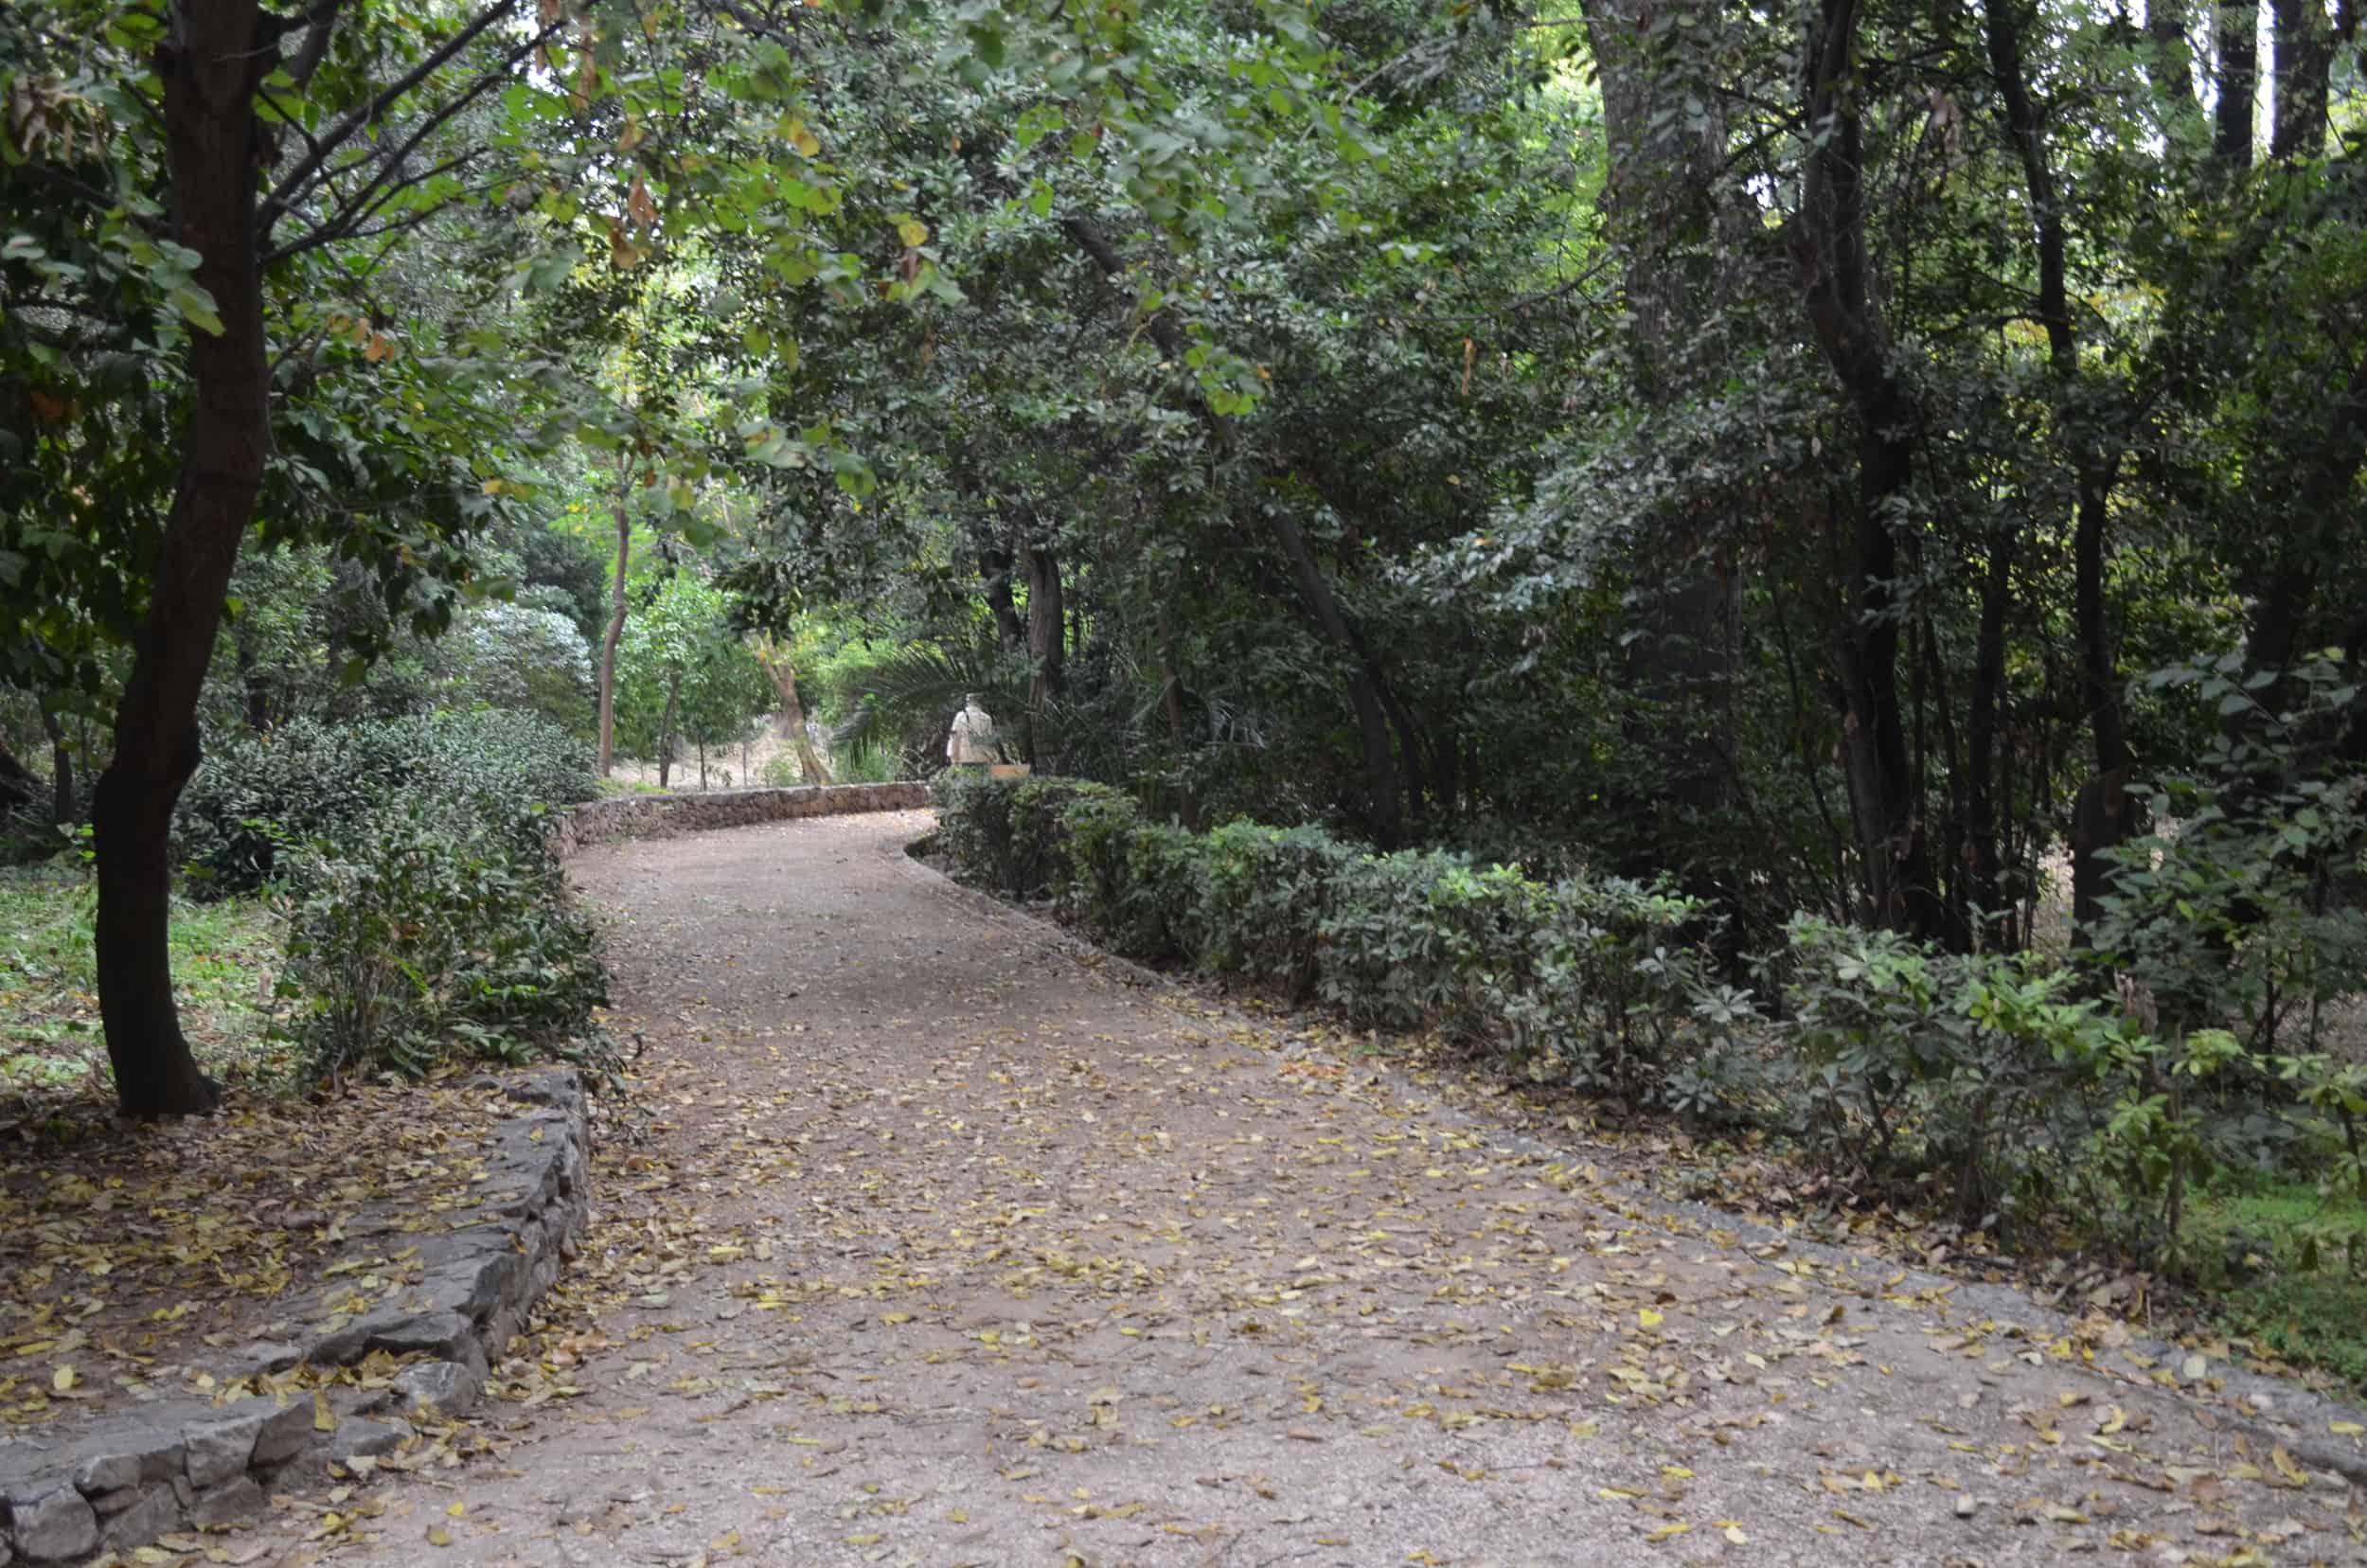 Path through the National Garden in Athens, Greece